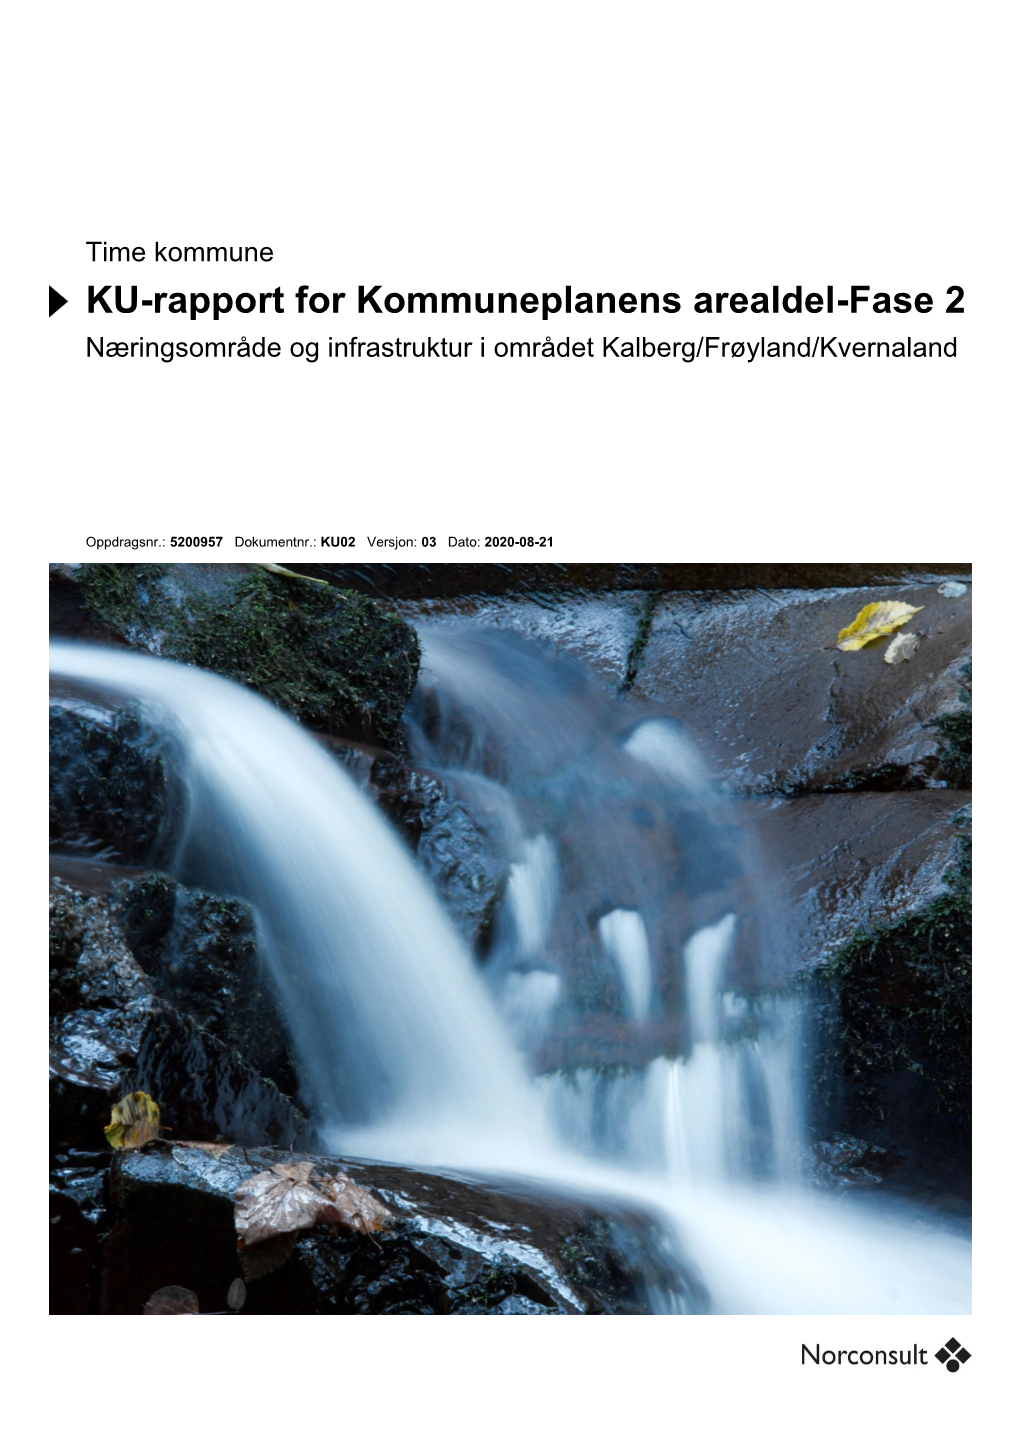 Time Kommune KU-Rapport for Kommuneplanens Arealdel-Fase 2 Næringsområde Og Infrastruktur I Området Kalberg/Frøyland/Kvernaland